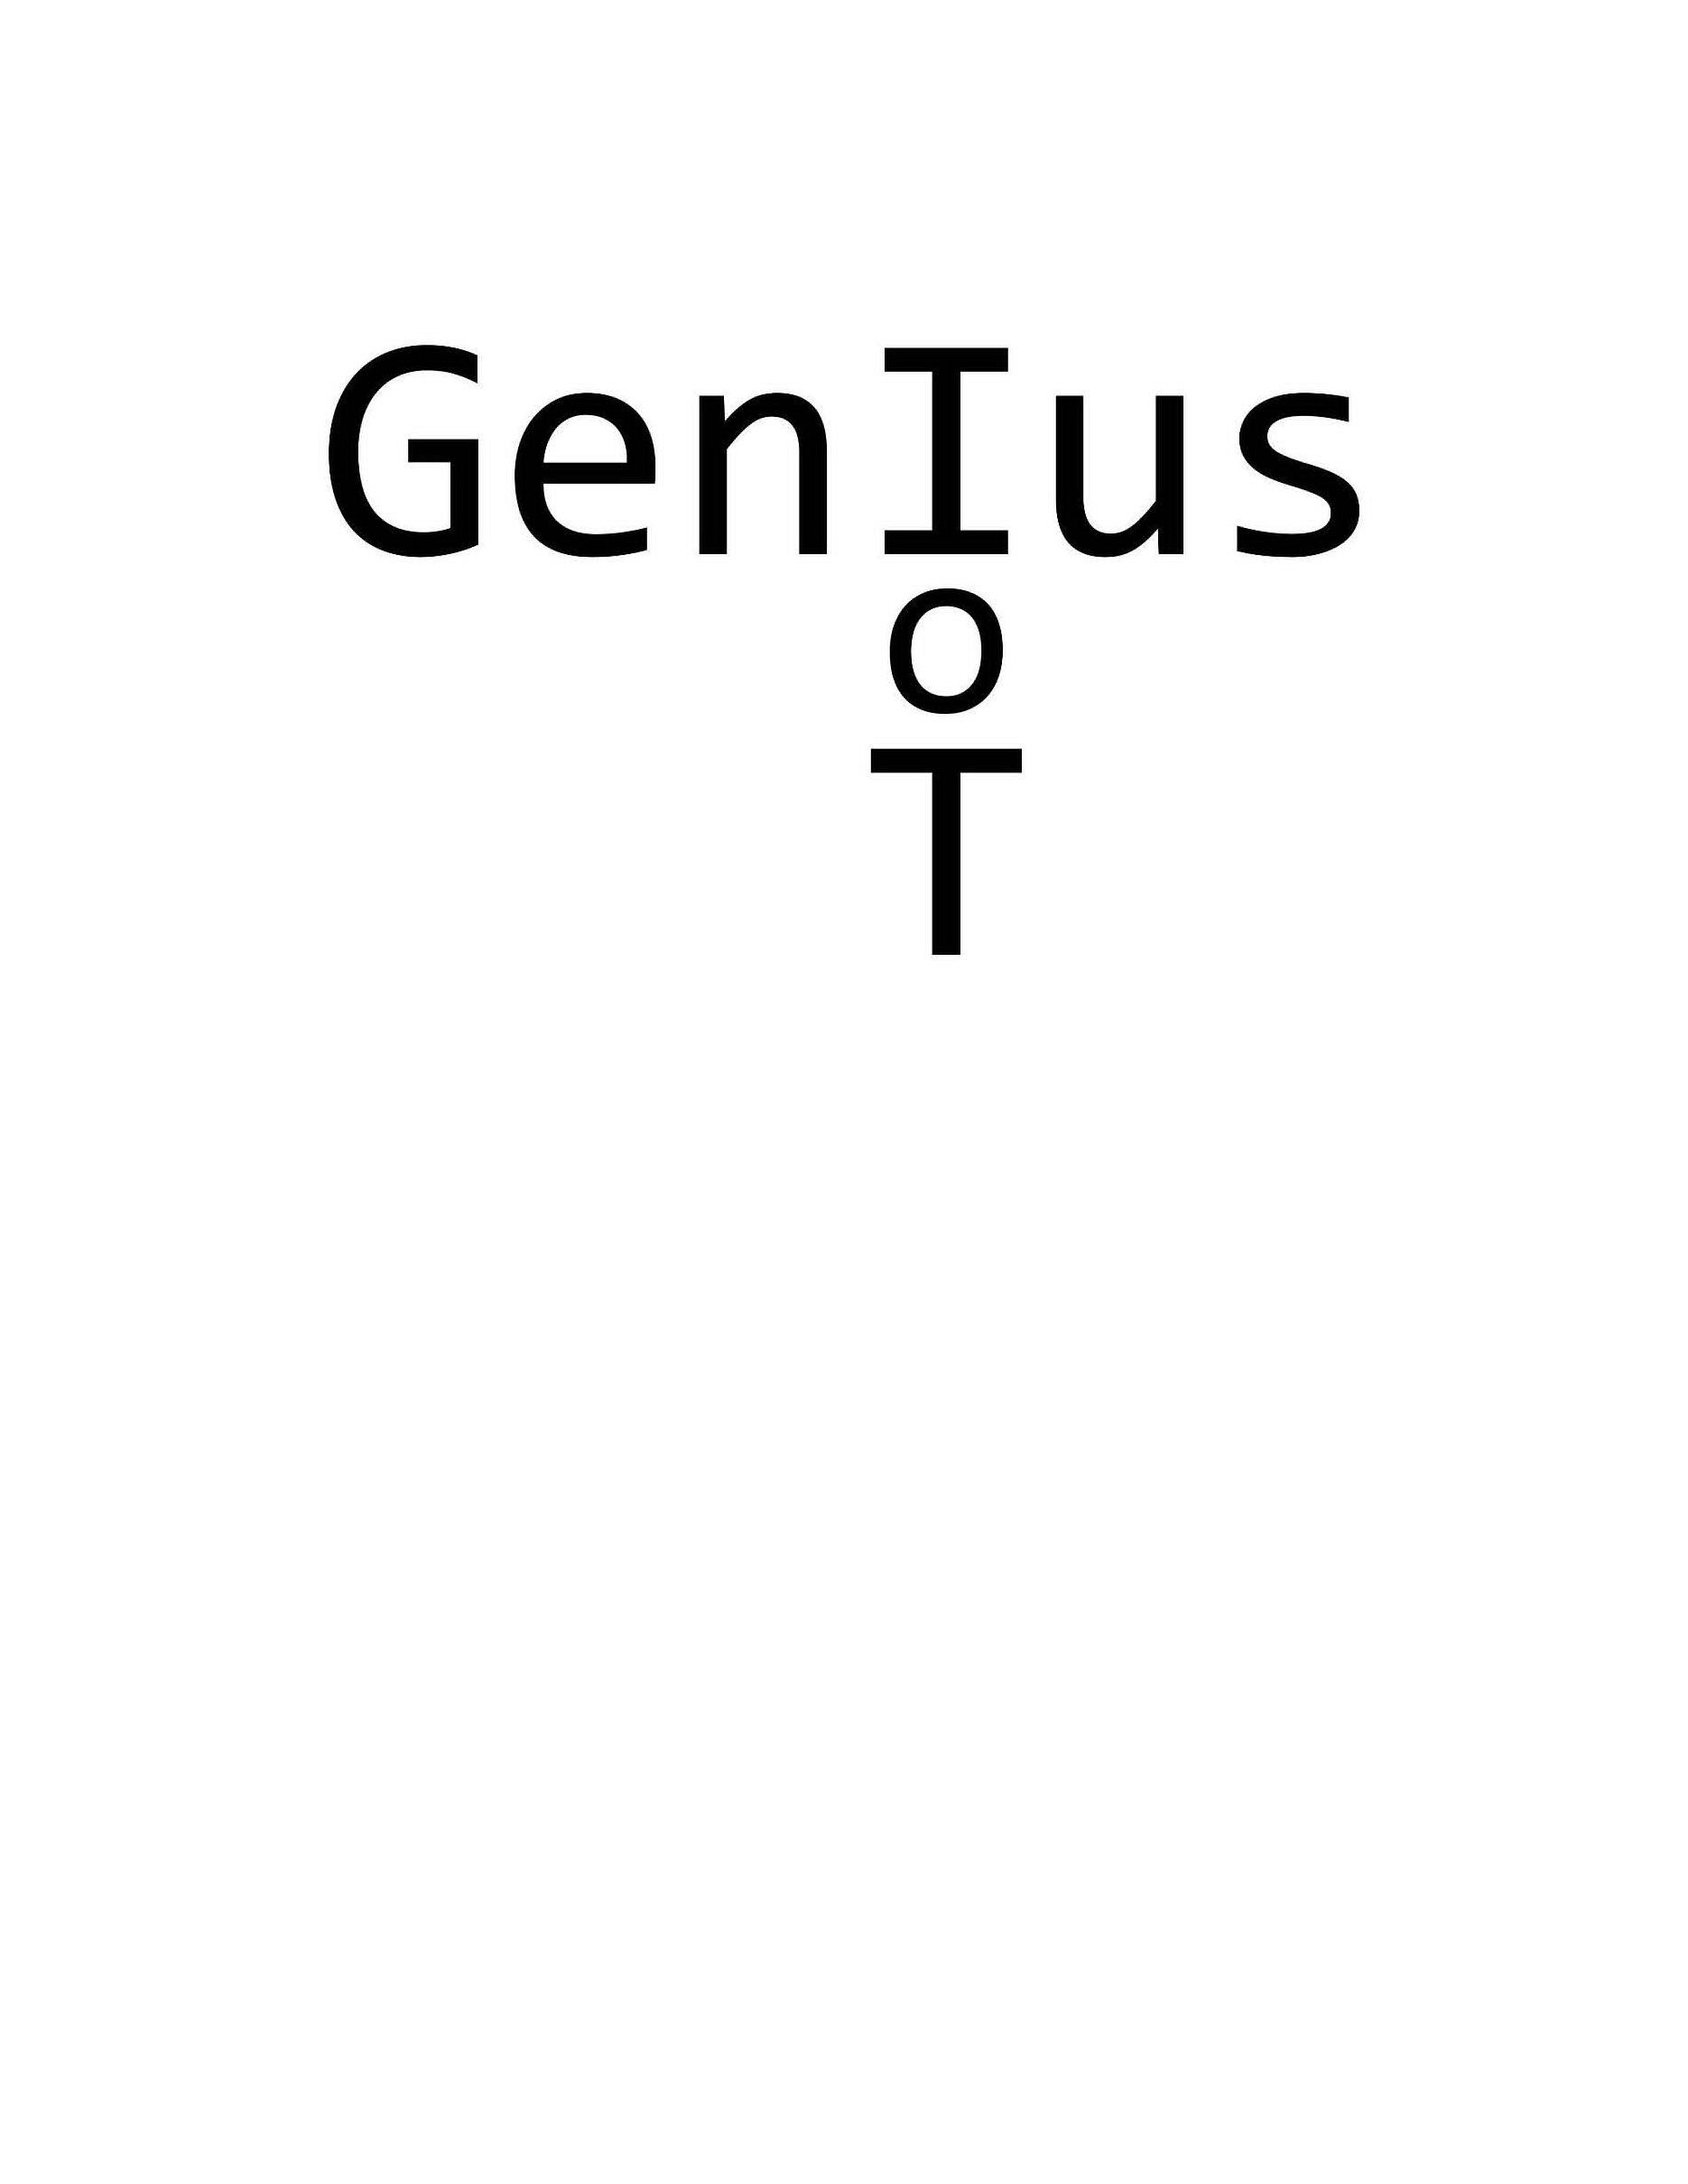  GENIUS O T